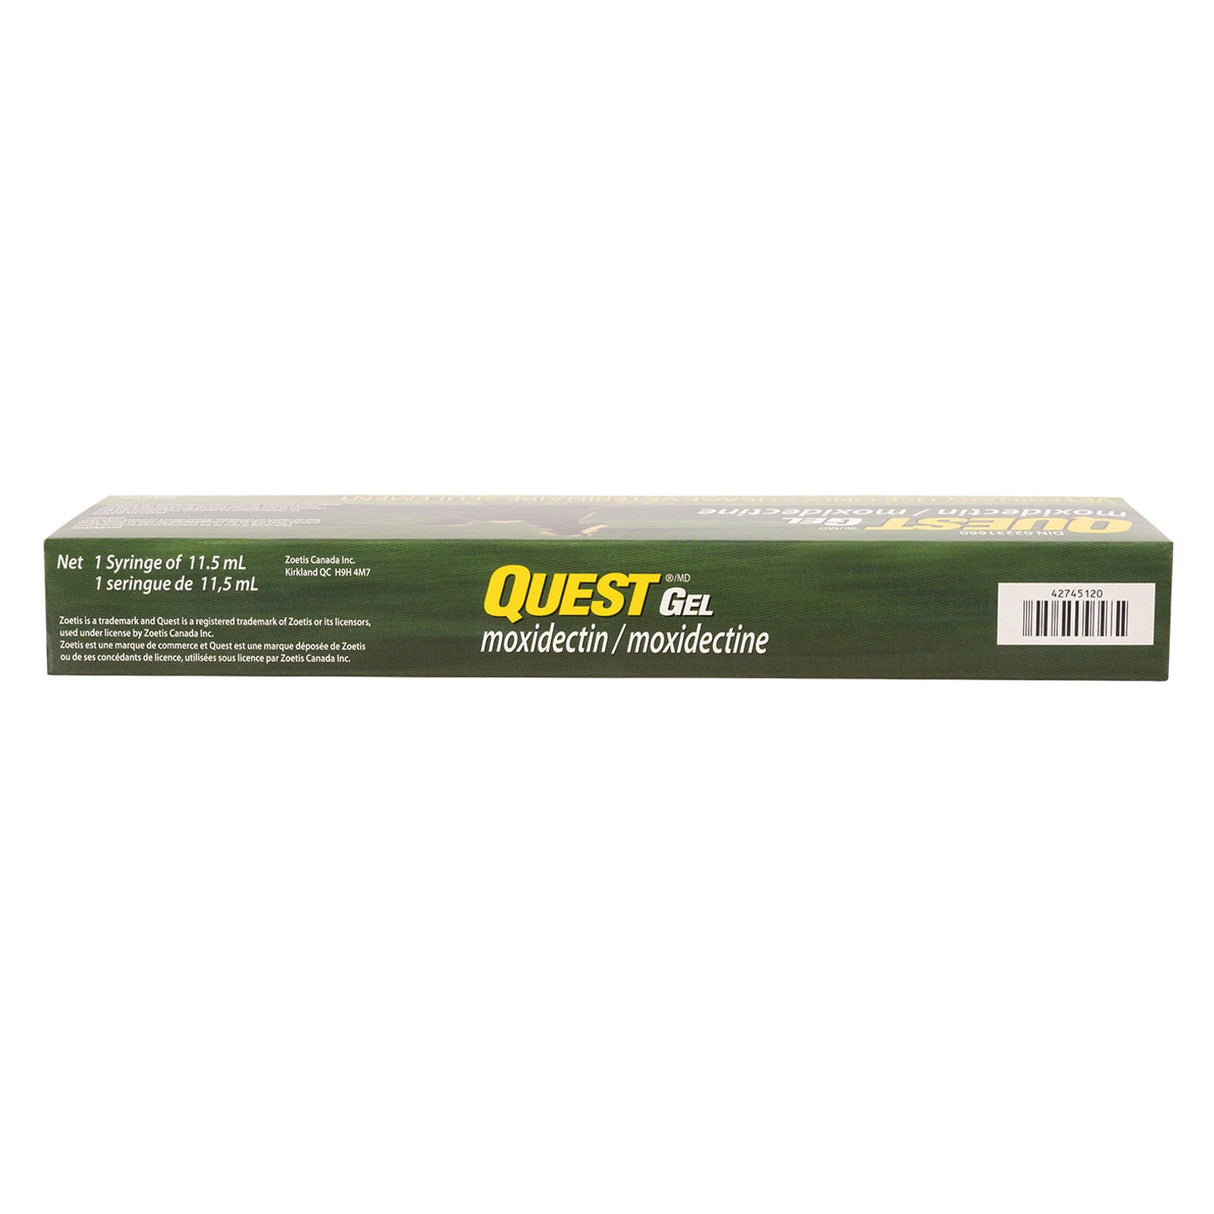 Golden Horseshoe Powermectin Vermifuge 6,42 g – Greenhawk